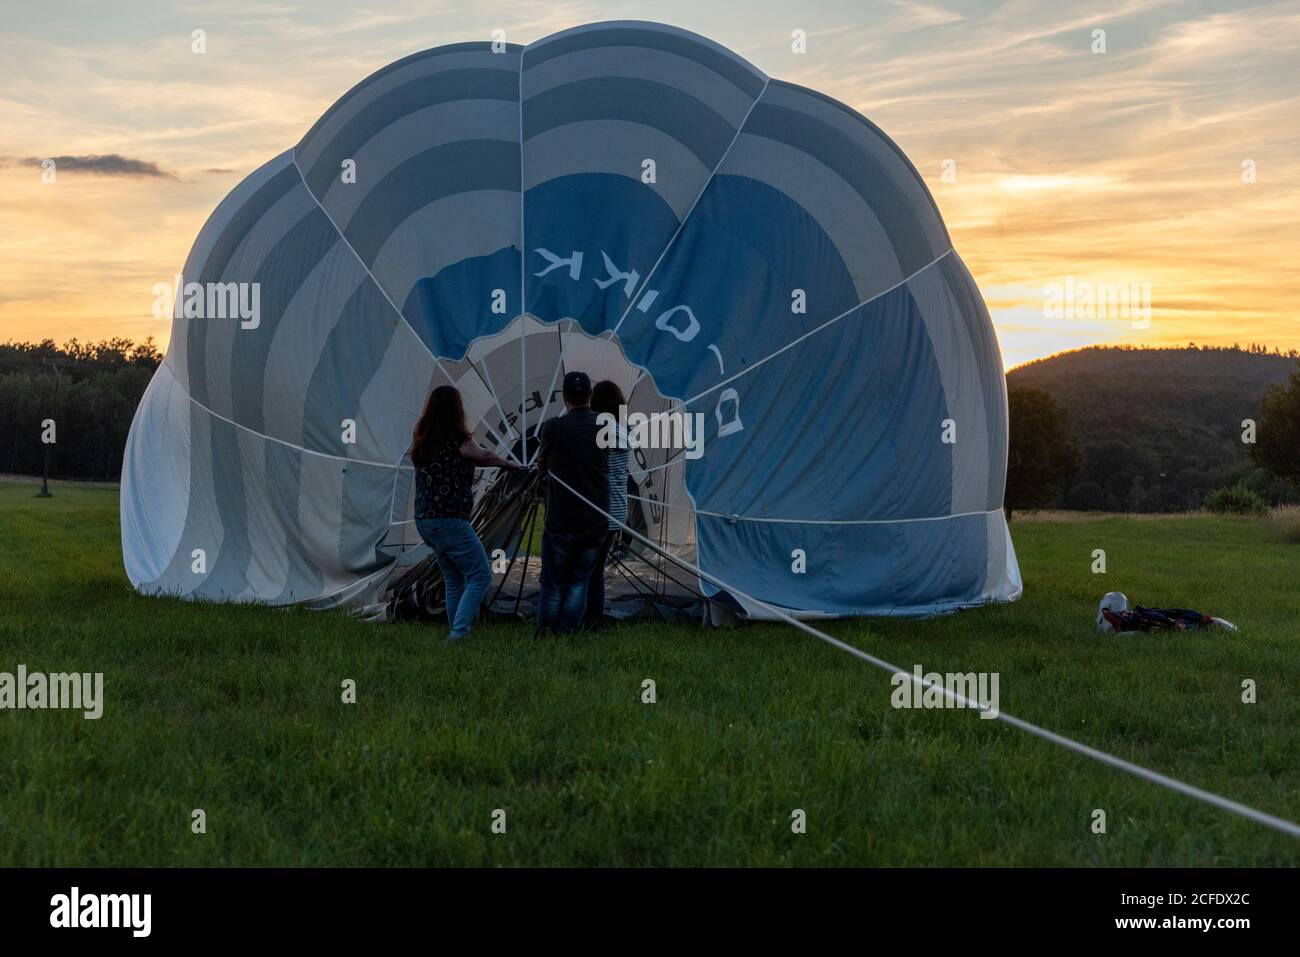 Allemagne, Thuringe, Ellrich, trois personnes tirant une montgolfière, coucher de soleil. Banque D'Images